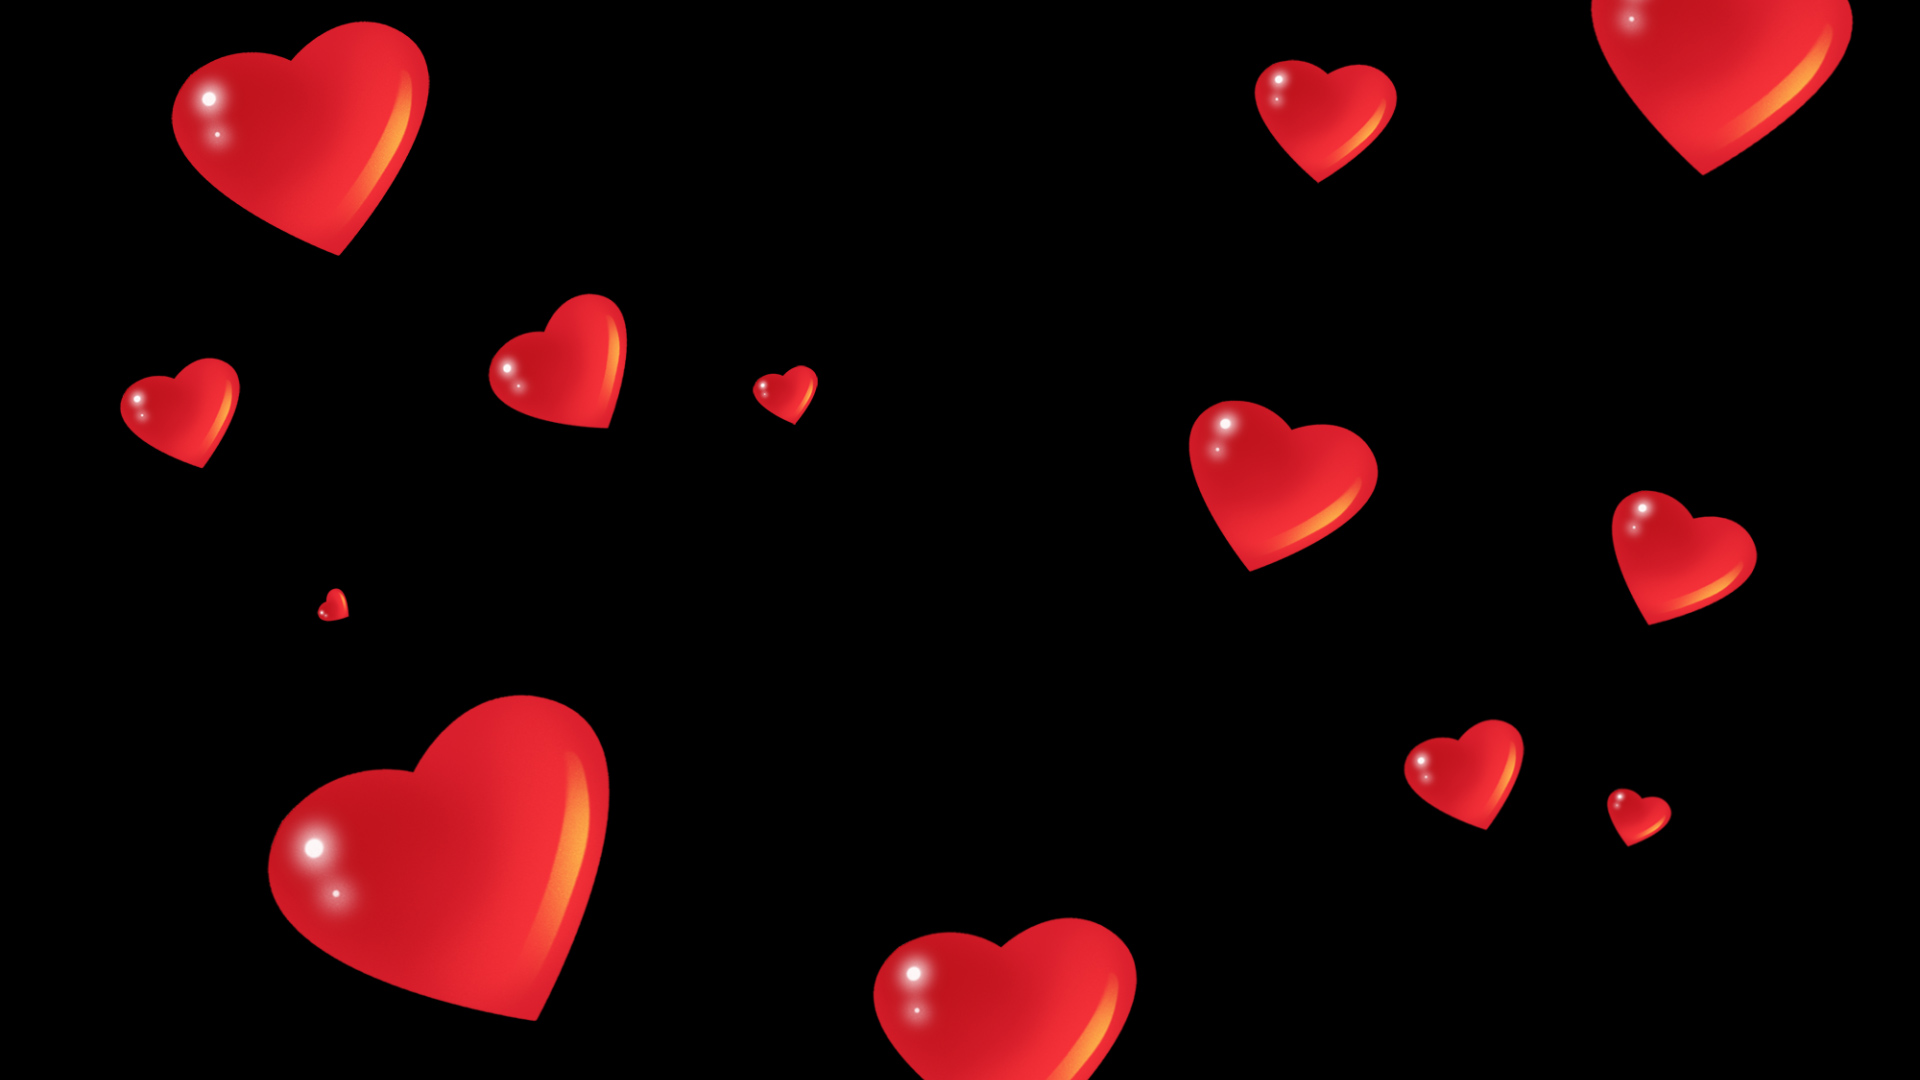 印有LOVE的红色心形抱枕46538_情人节_节庆类_图库壁纸_68Design